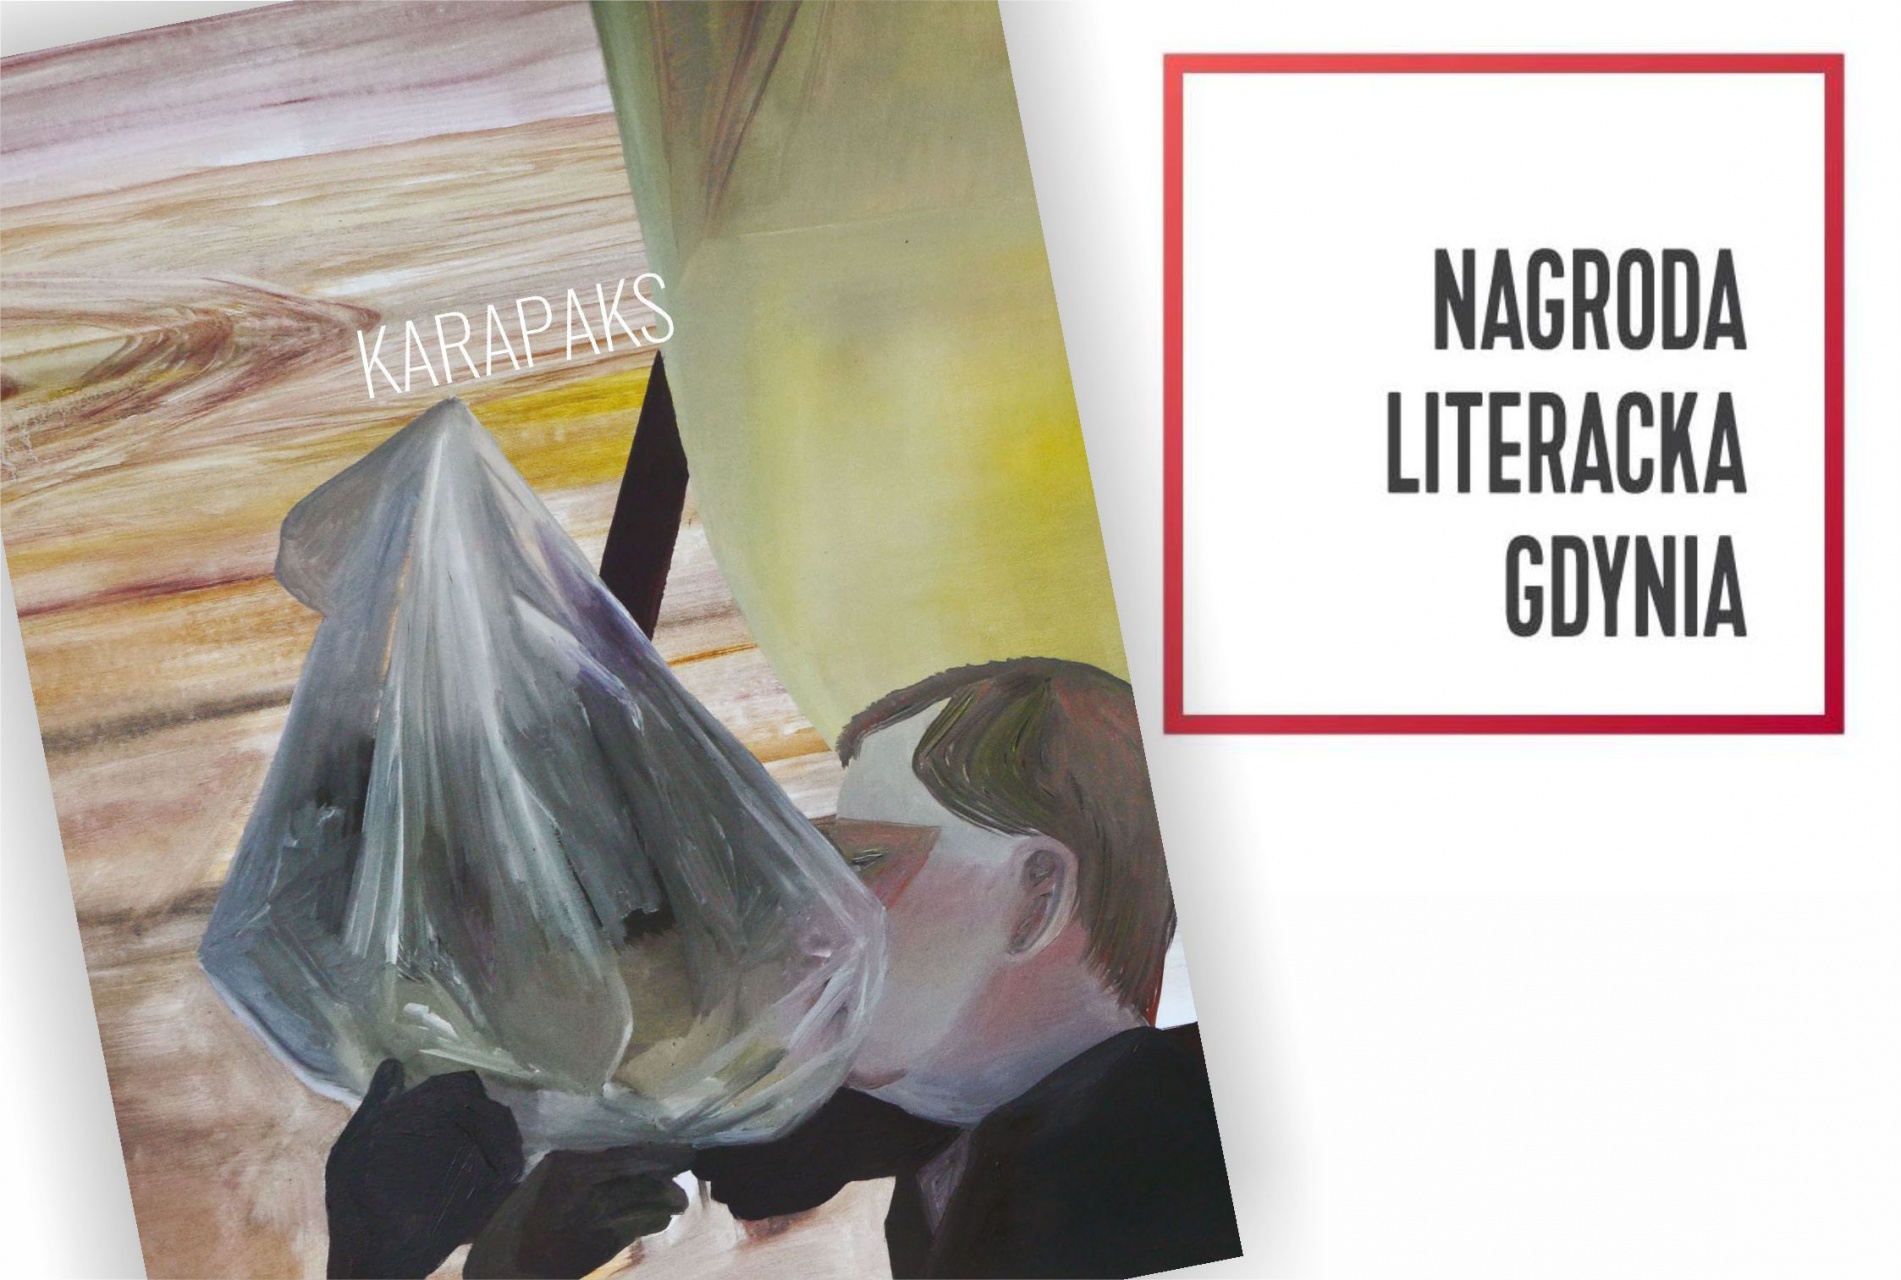 kolorowa okładka książki pt. Karapaks; obok logo: Nagroda Literacka Gdynia